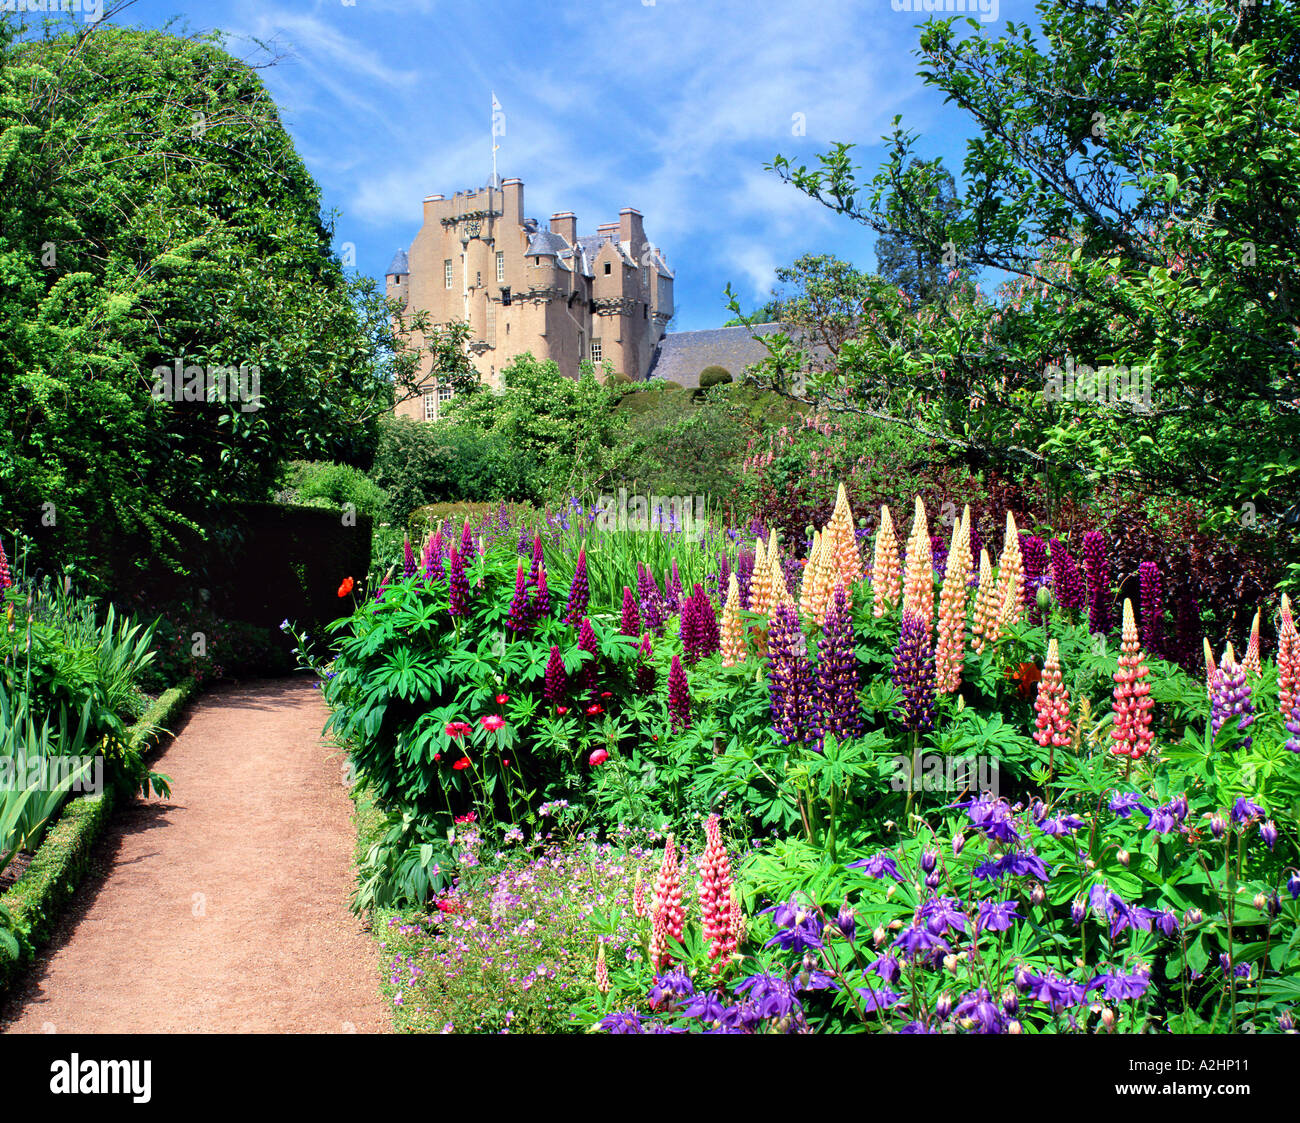 GB - Scozia: Castello Grathes Foto Stock